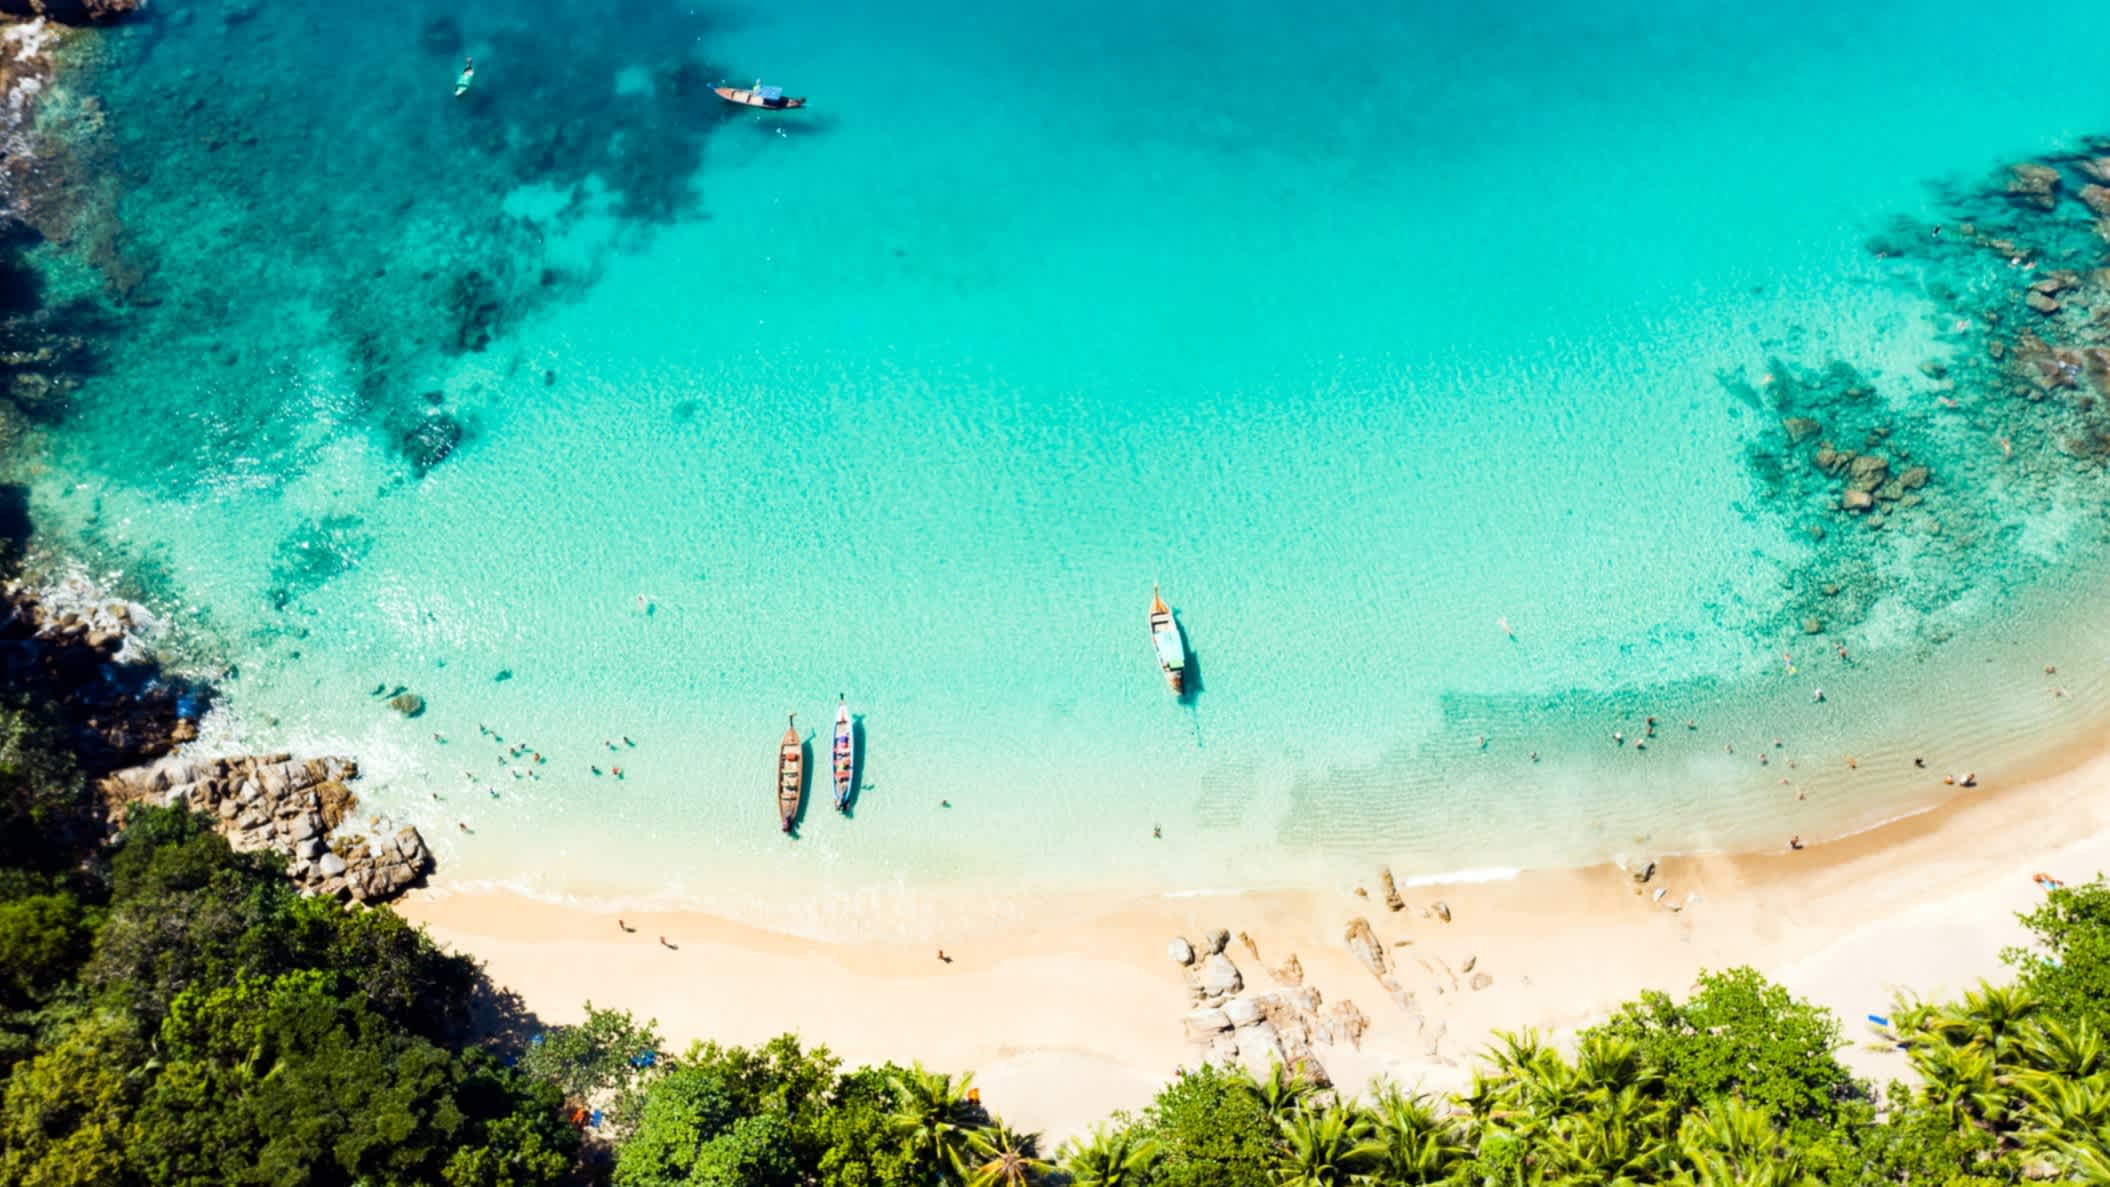 Luftaufnahme des Banana Beach auf Phuket mit Booten und türkisblauem Meer.